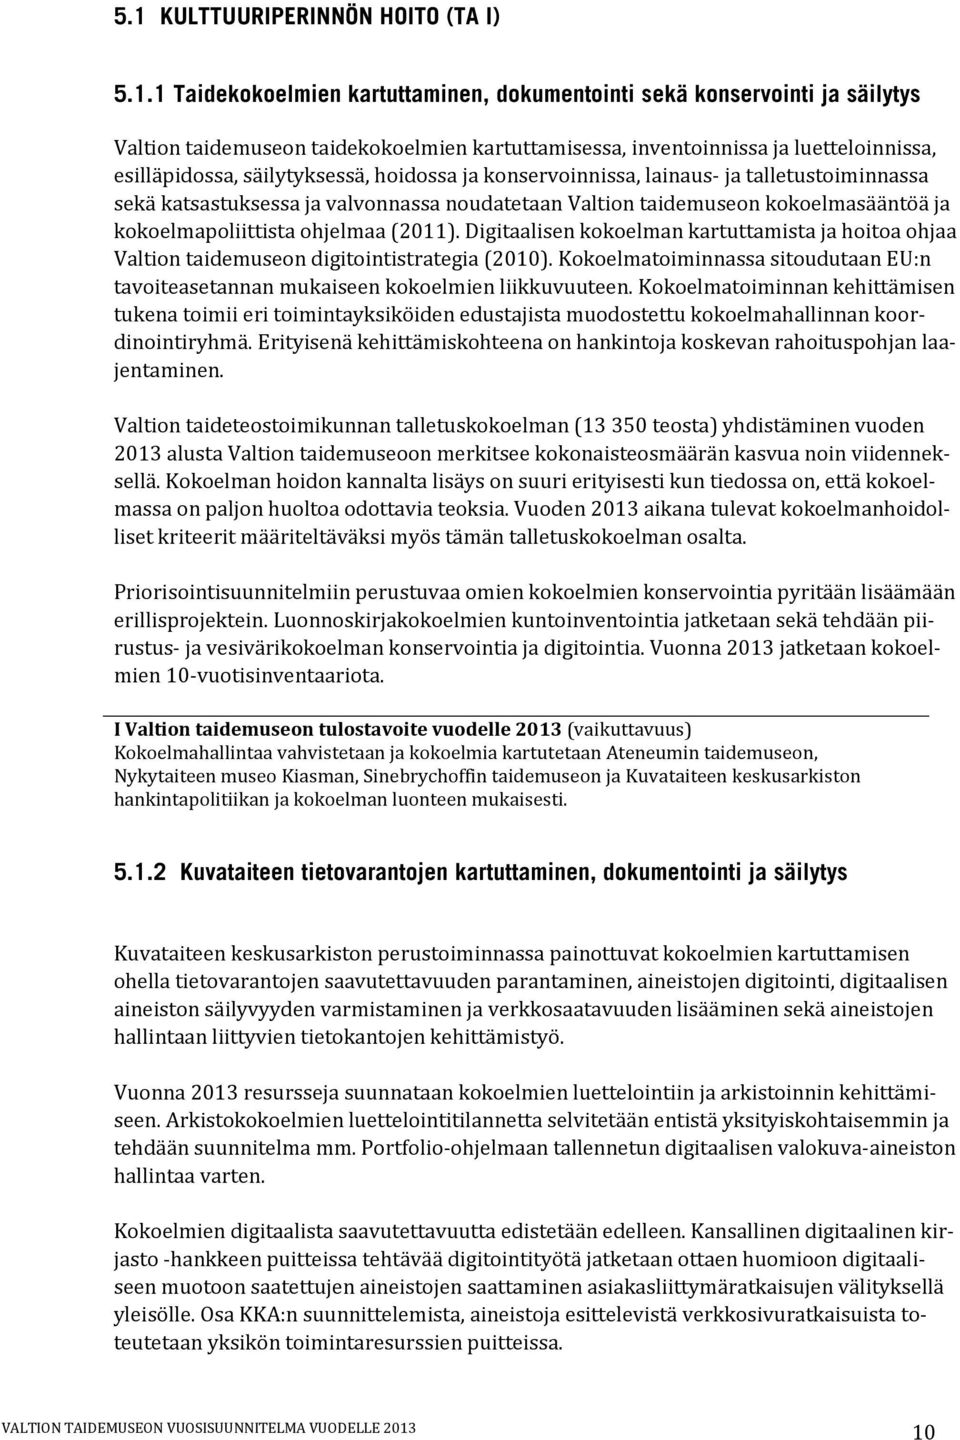 kokoelmapoliittista ohjelmaa (2011). Digitaalisen kokoelman kartuttamista ja hoitoa ohjaa Valtion taidemuseon digitointistrategia (2010).